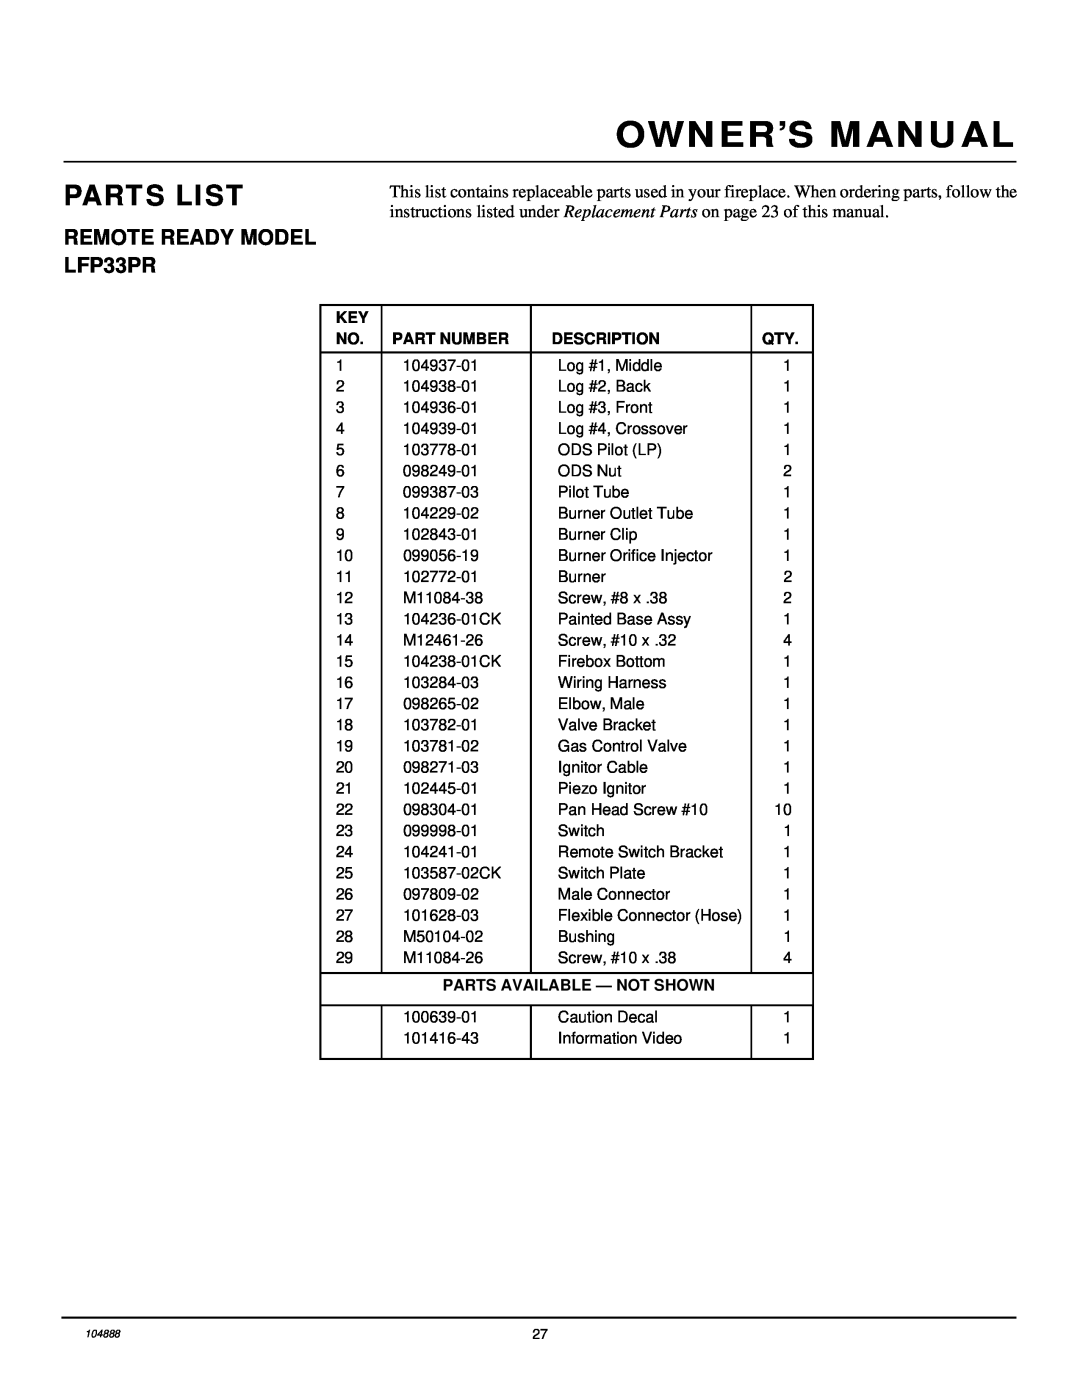 Desa installation manual Parts List, REMOTE READY MODEL LFP33PR, Part Number, Description, Parts Available - Not Shown 